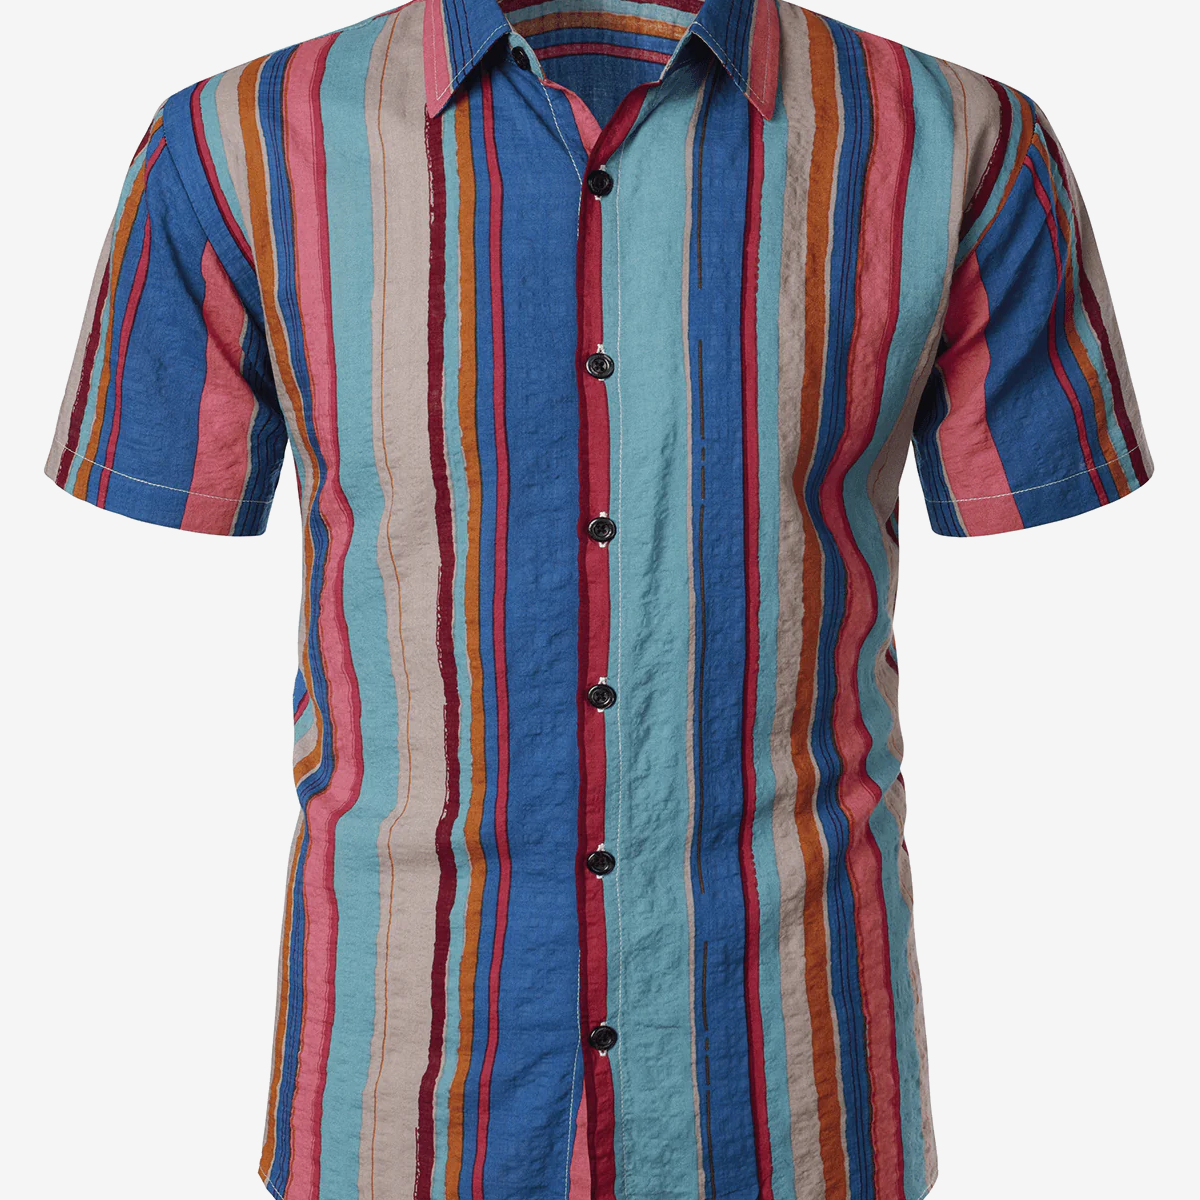 Camisa de manga corta con botones de vacaciones, color azul marino, retro, de verano, de los años 70, a rayas verticales, para hombre